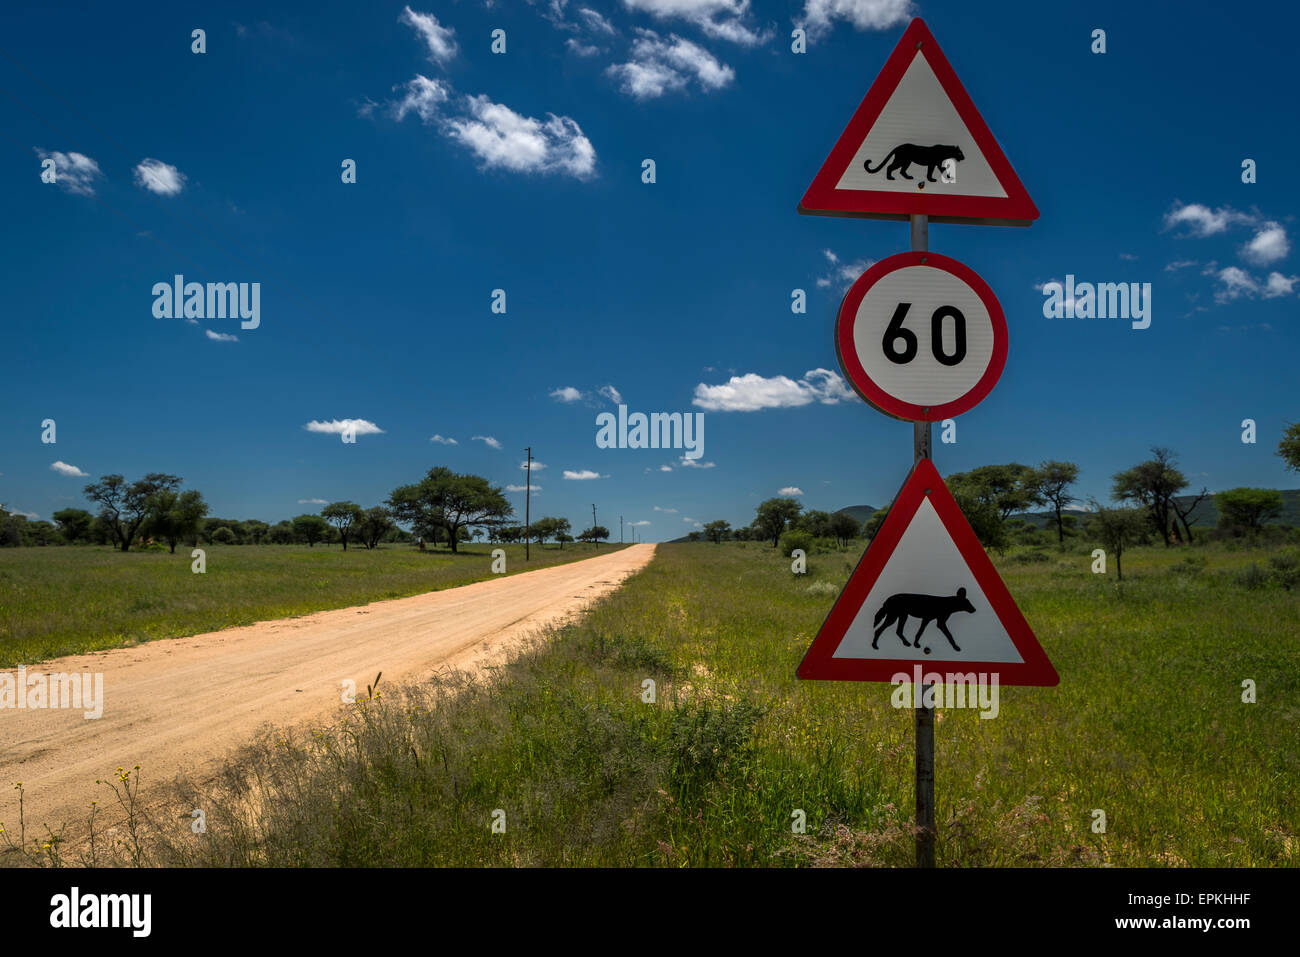 Circulation et de la signalisation routière avec limite de vitesse et animal crossing, Okonjima, Namibie, Afrique du Sud Banque D'Images